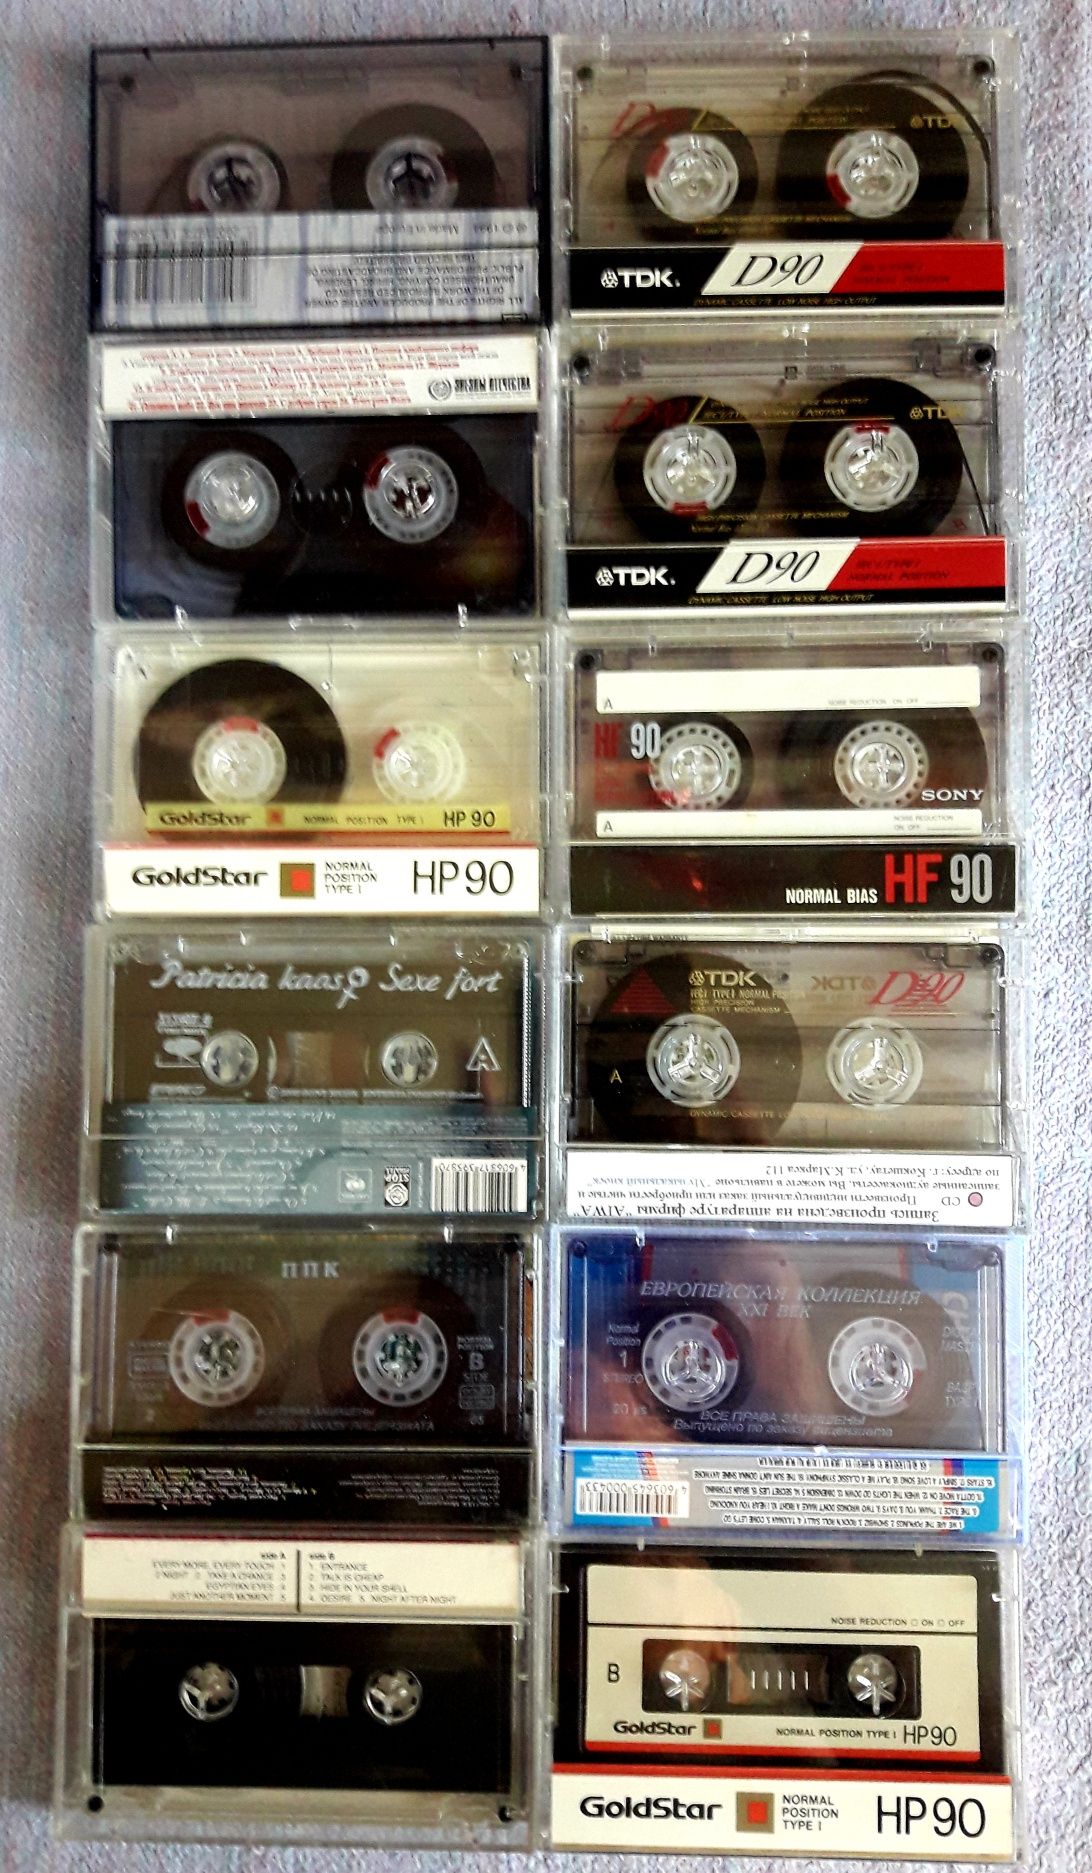 Продам кассета, аудио, магнитафон, коллекции.